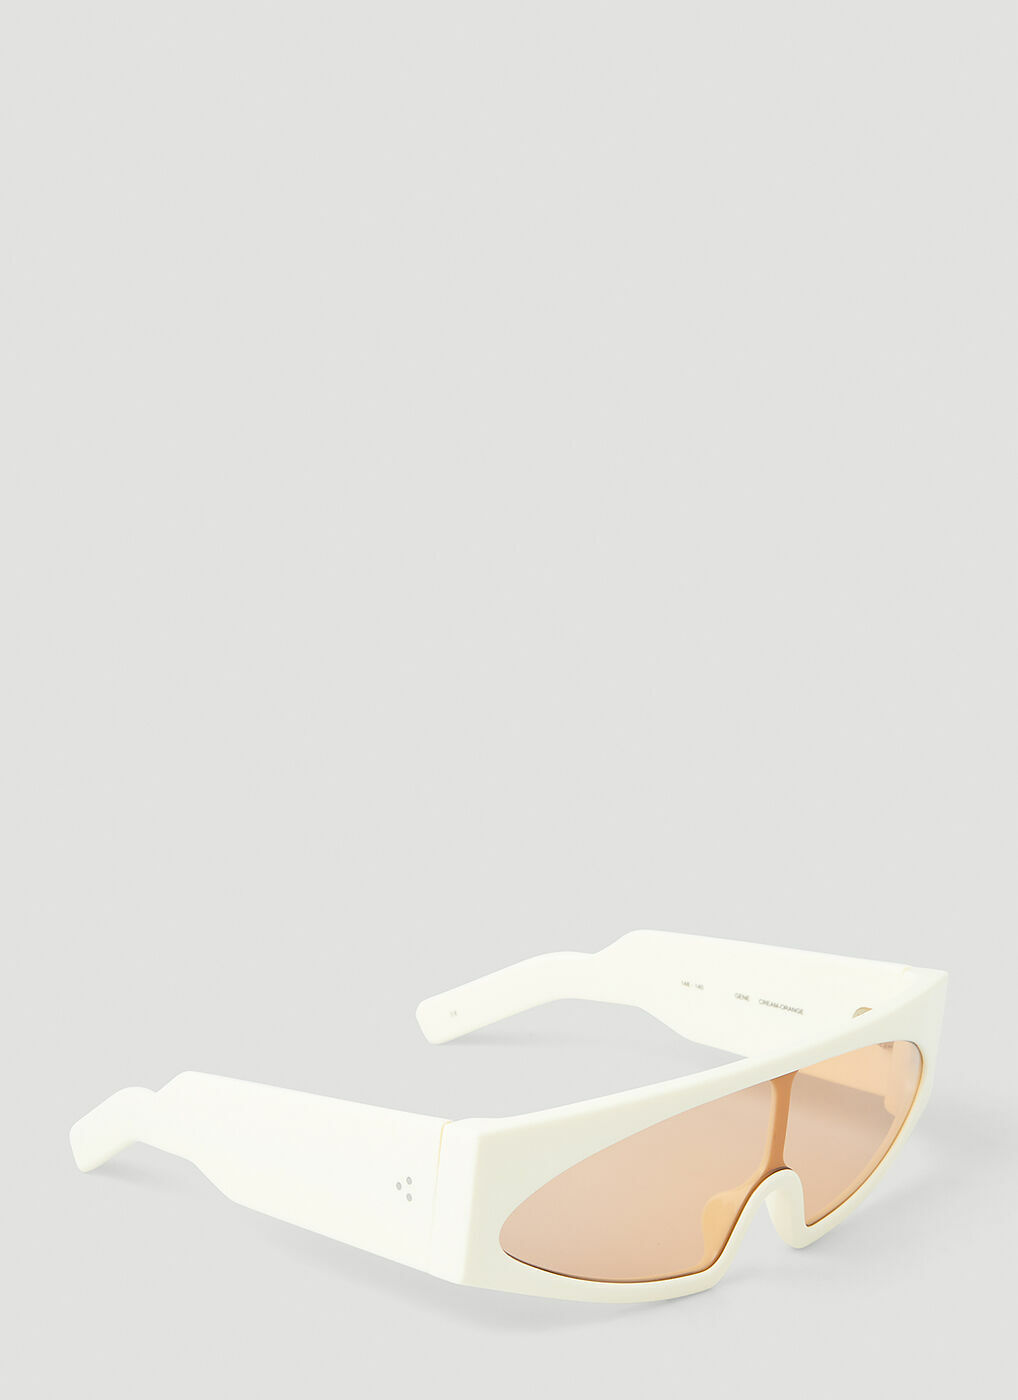 Gene Sunglasses in Cream